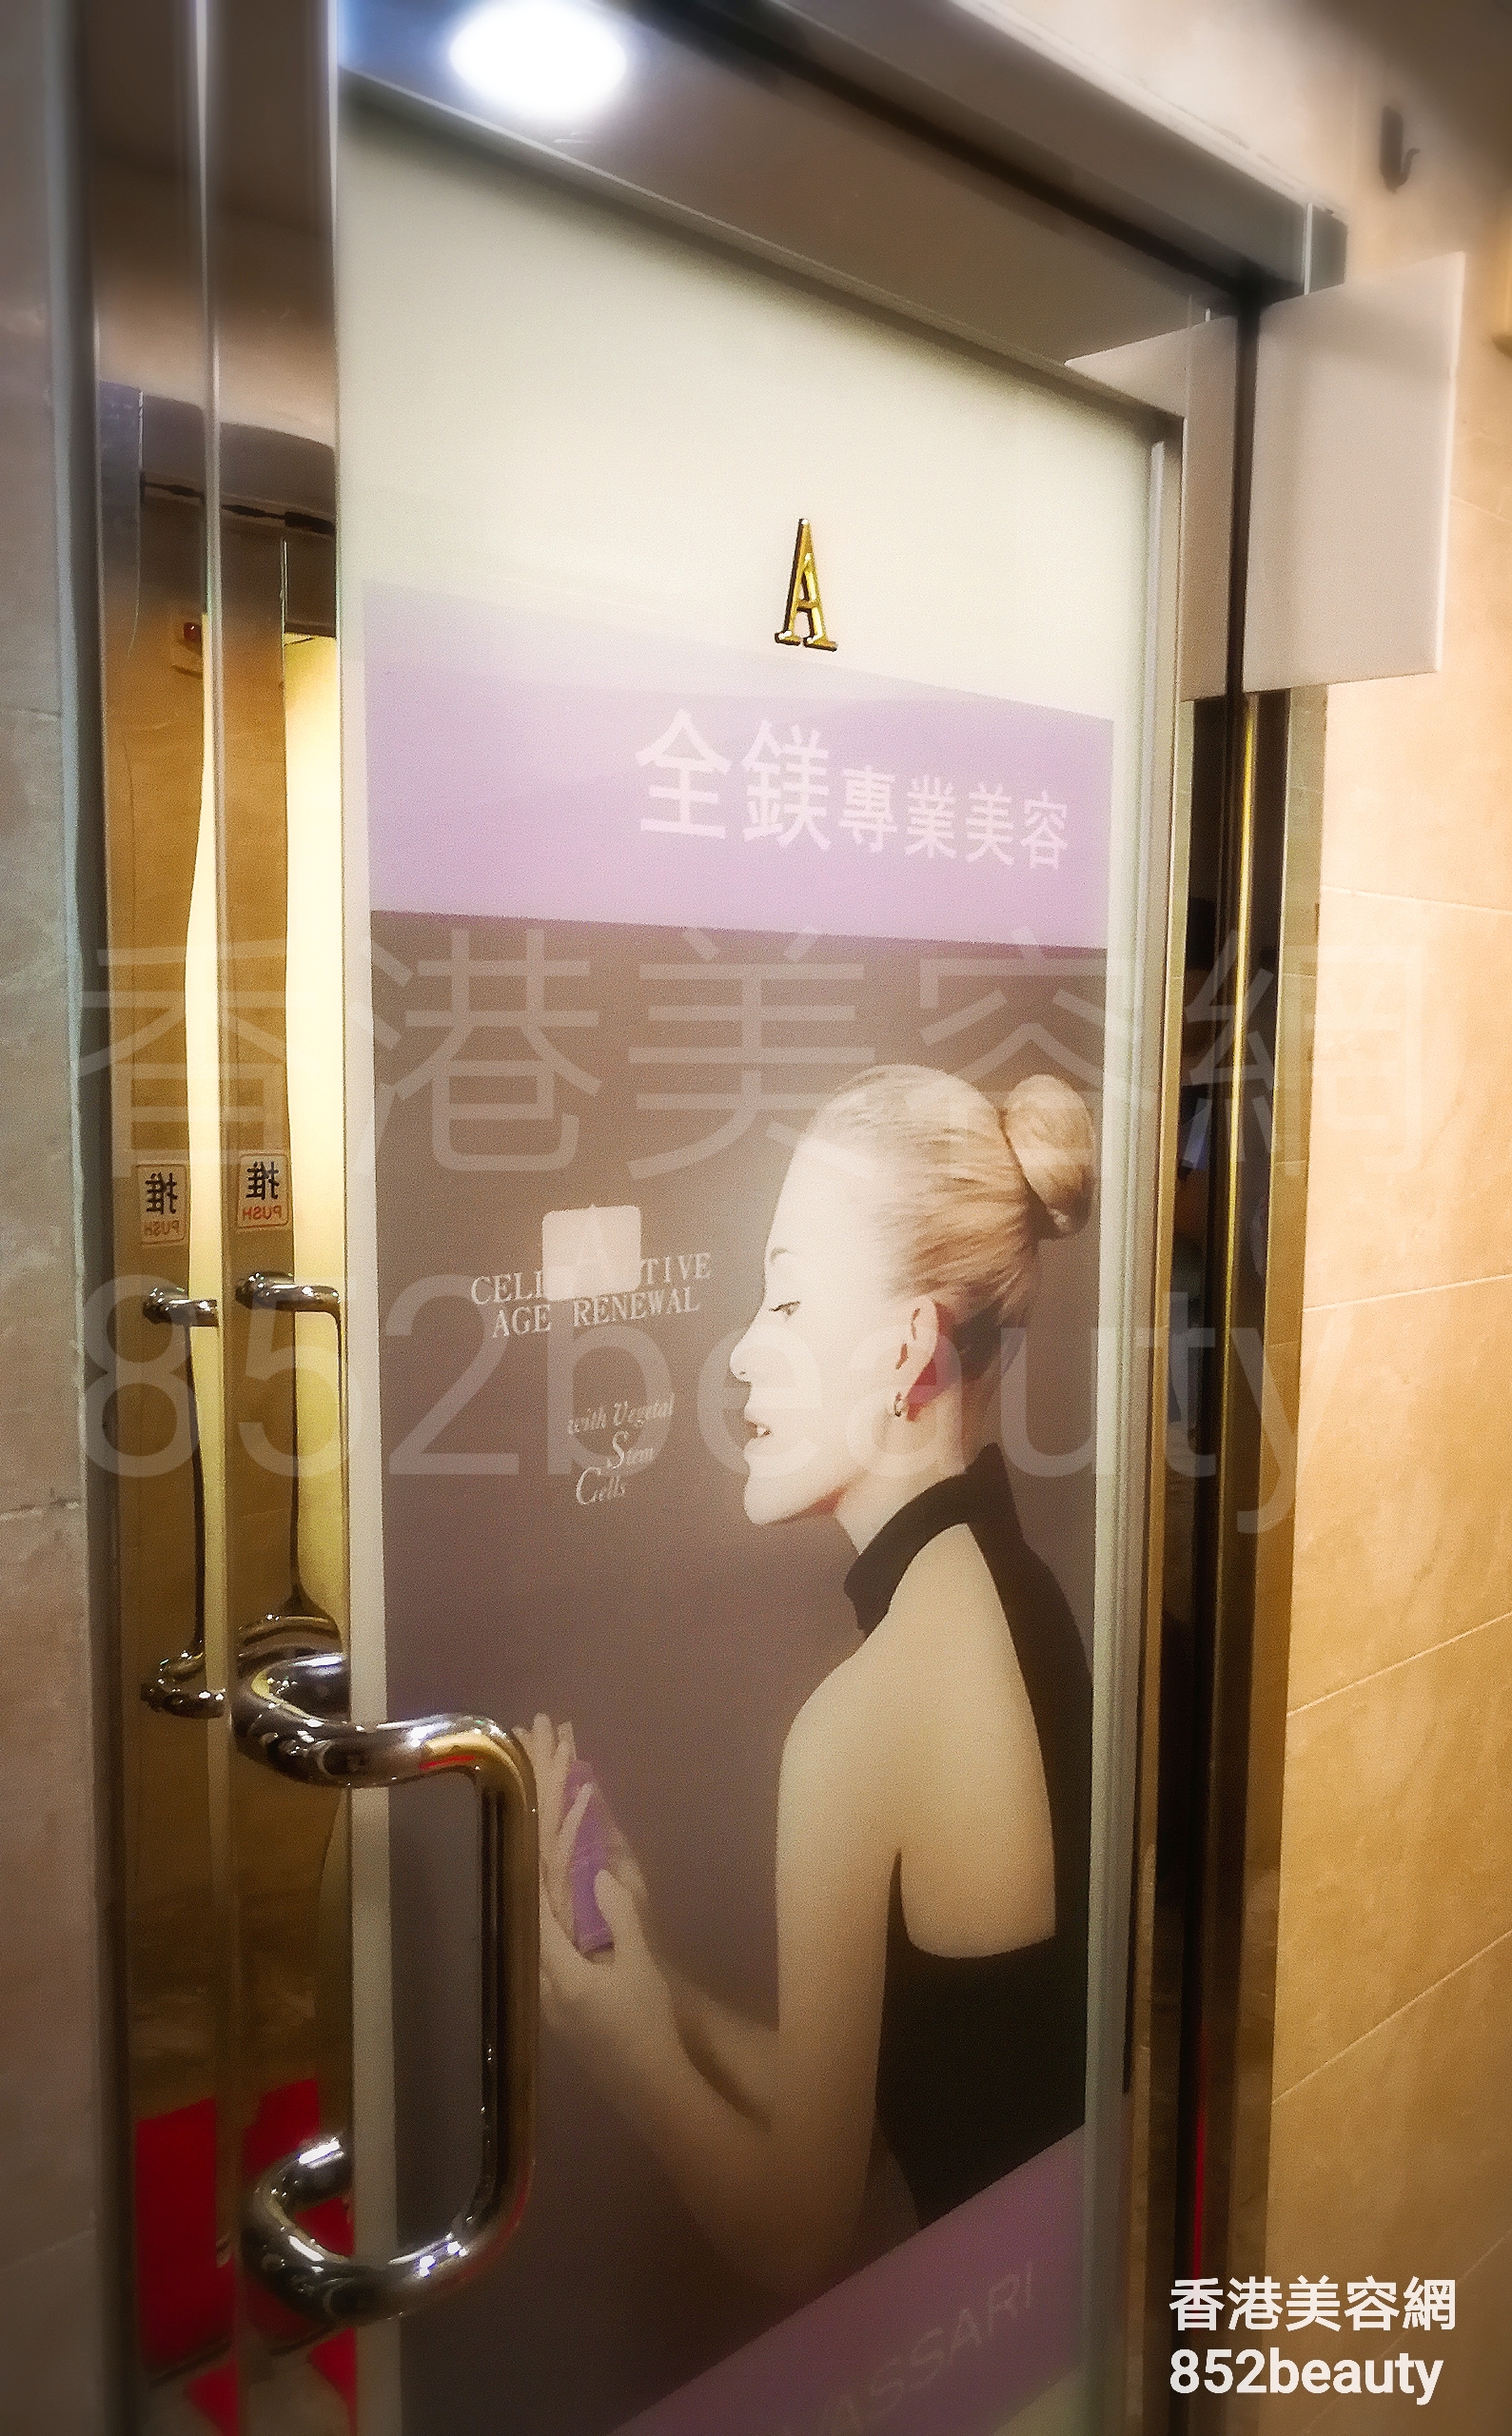 香港美容網 Hong Kong Beauty Salon 美容院 / 美容師: 全鎂 專業美容